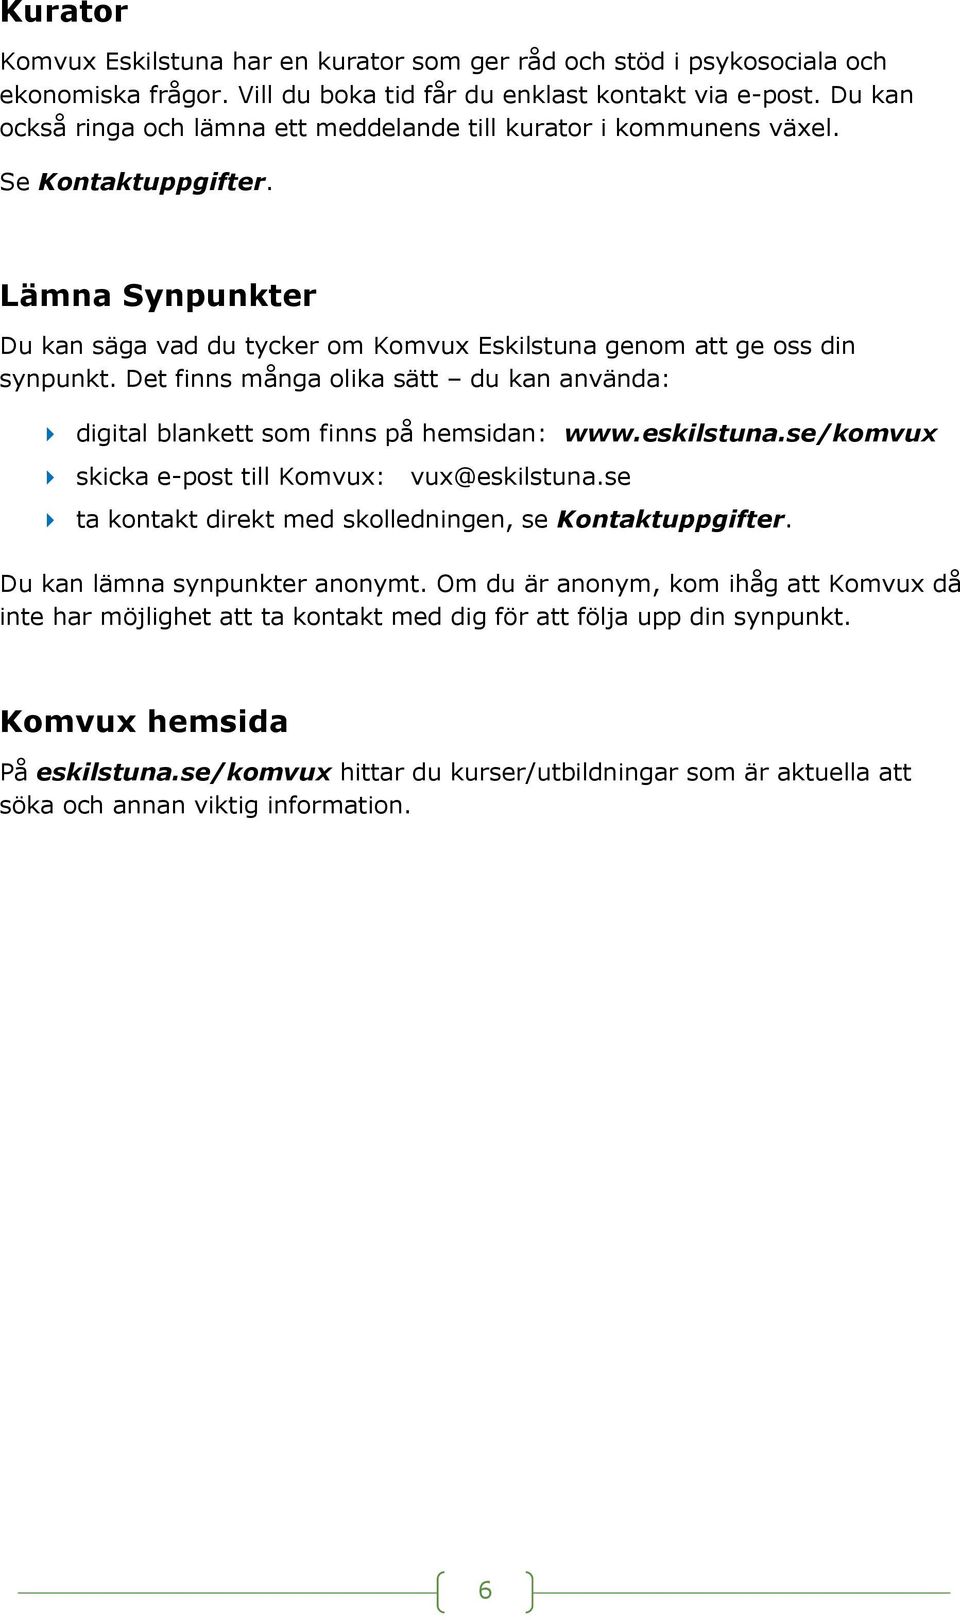 Det finns många olika sätt du kan använda: digital blankett som finns på hemsidan: www.eskilstuna.se/komvux skicka e-post till Komvux: vux@eskilstuna.